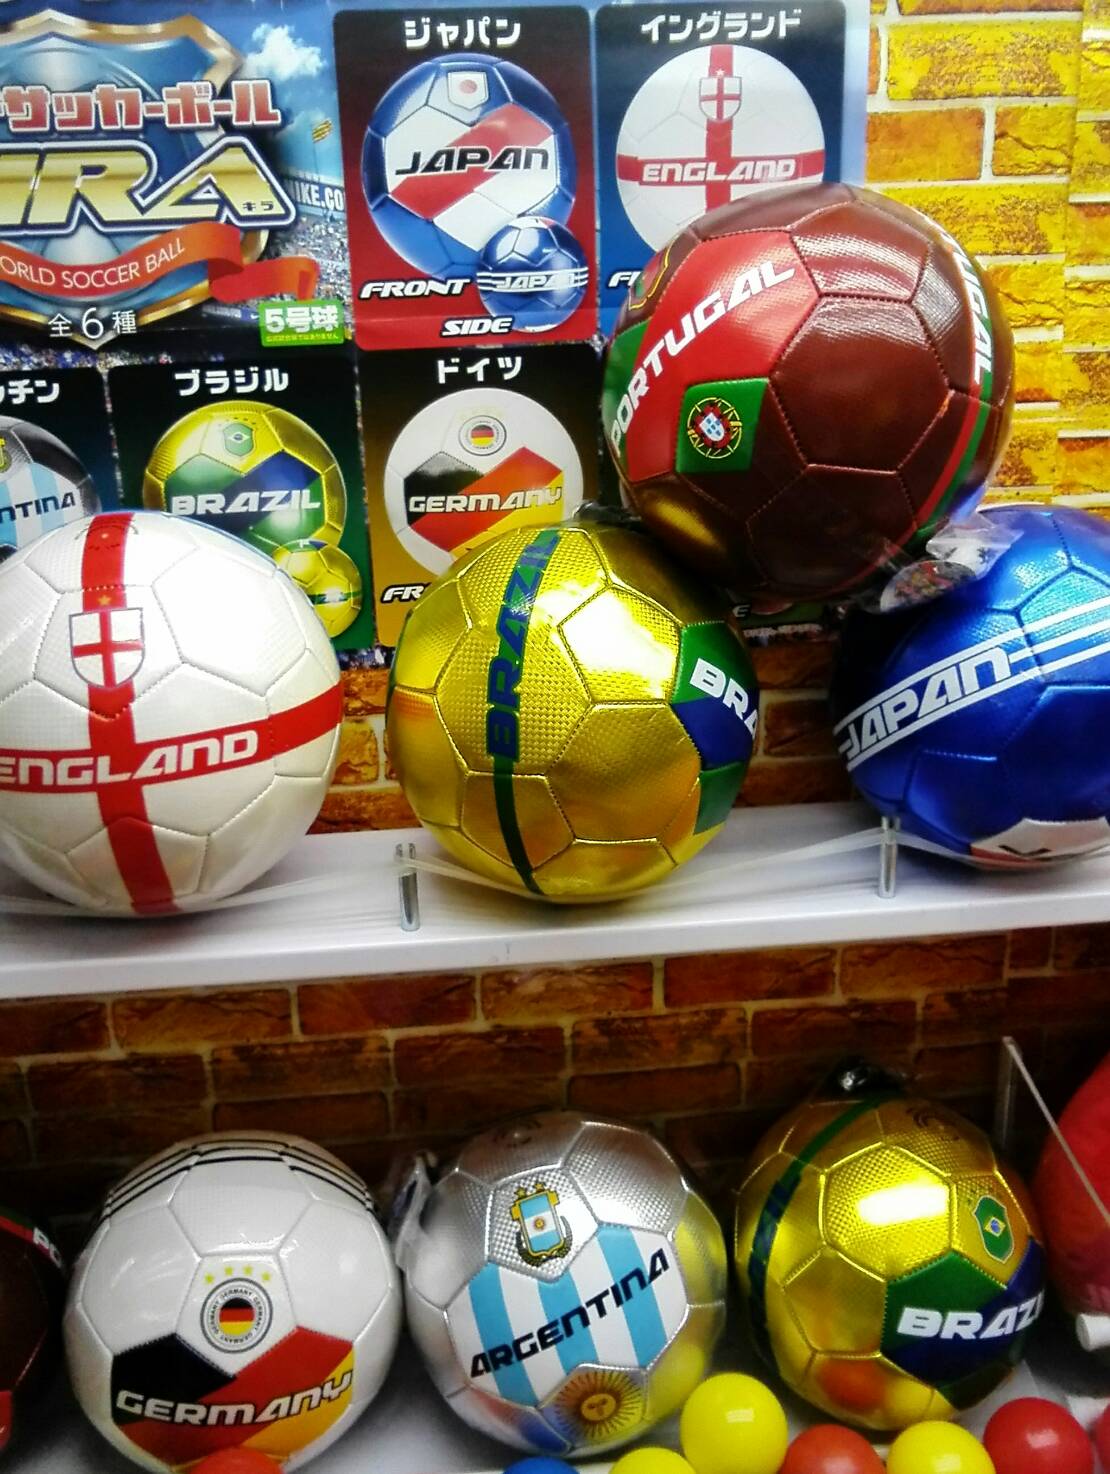 アミューズメントコーナー 公式マンガ倉庫山口店 Op Twitter ワールドサッカーボール 色んな国のデザインのサッカーボールが入荷しました 頑張れ 日本 種類は6種類です T Co Tlg2uwy0sb Twitter